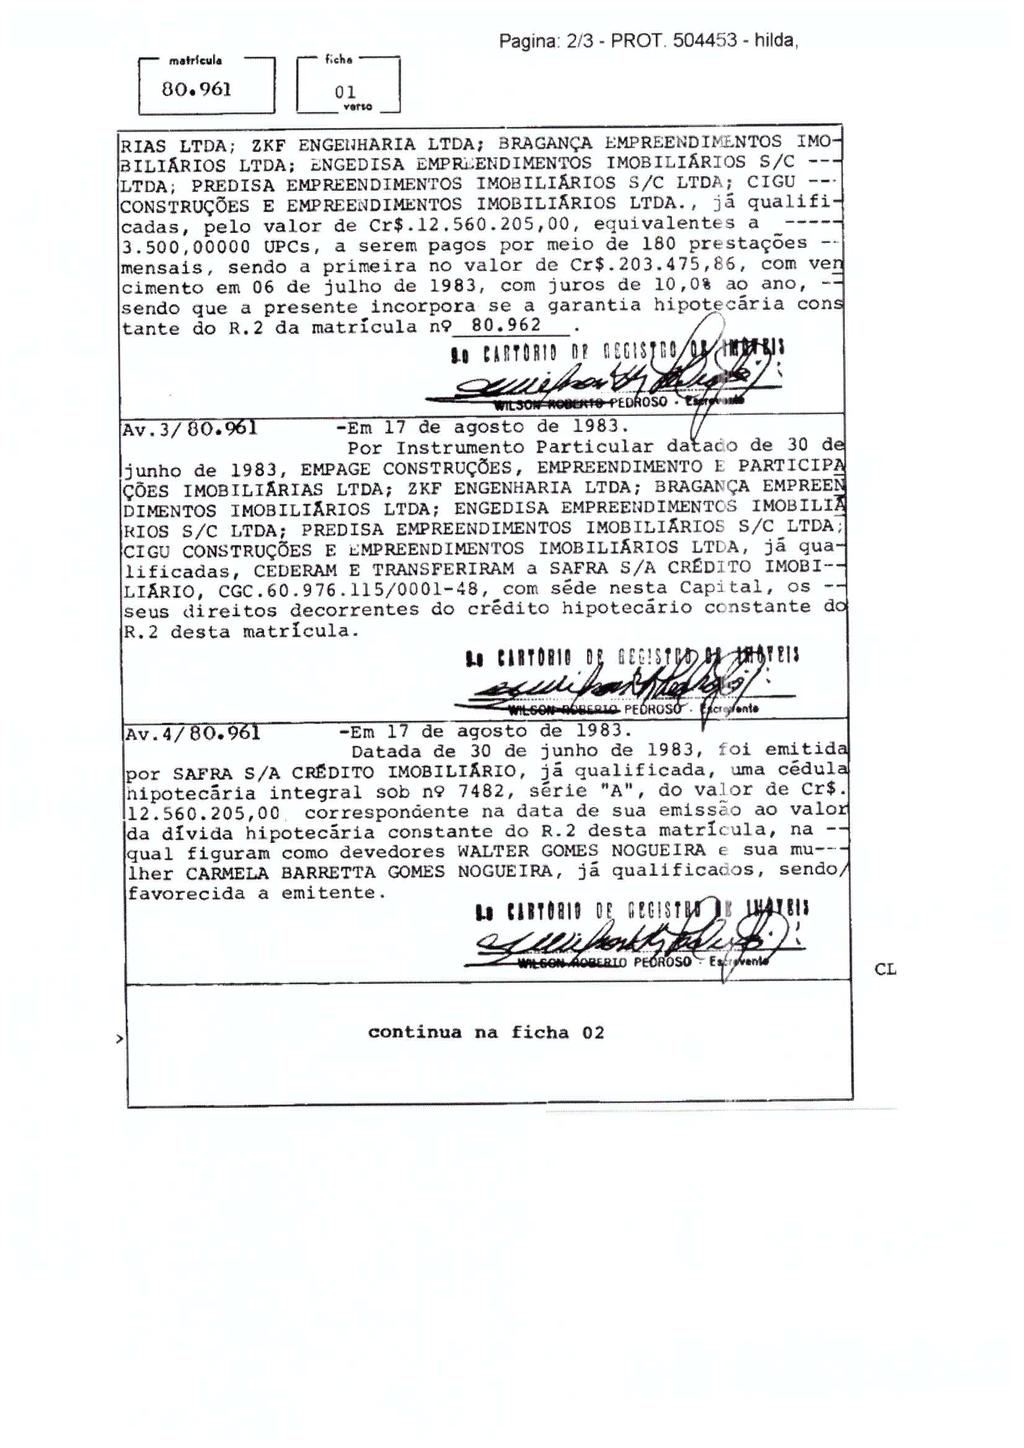 fls. 96 Este documento foi protocolado em 05/08/2015 às 15:41, é cópia do original assinado digitalmente por MARA APARECIDA CESAR DE